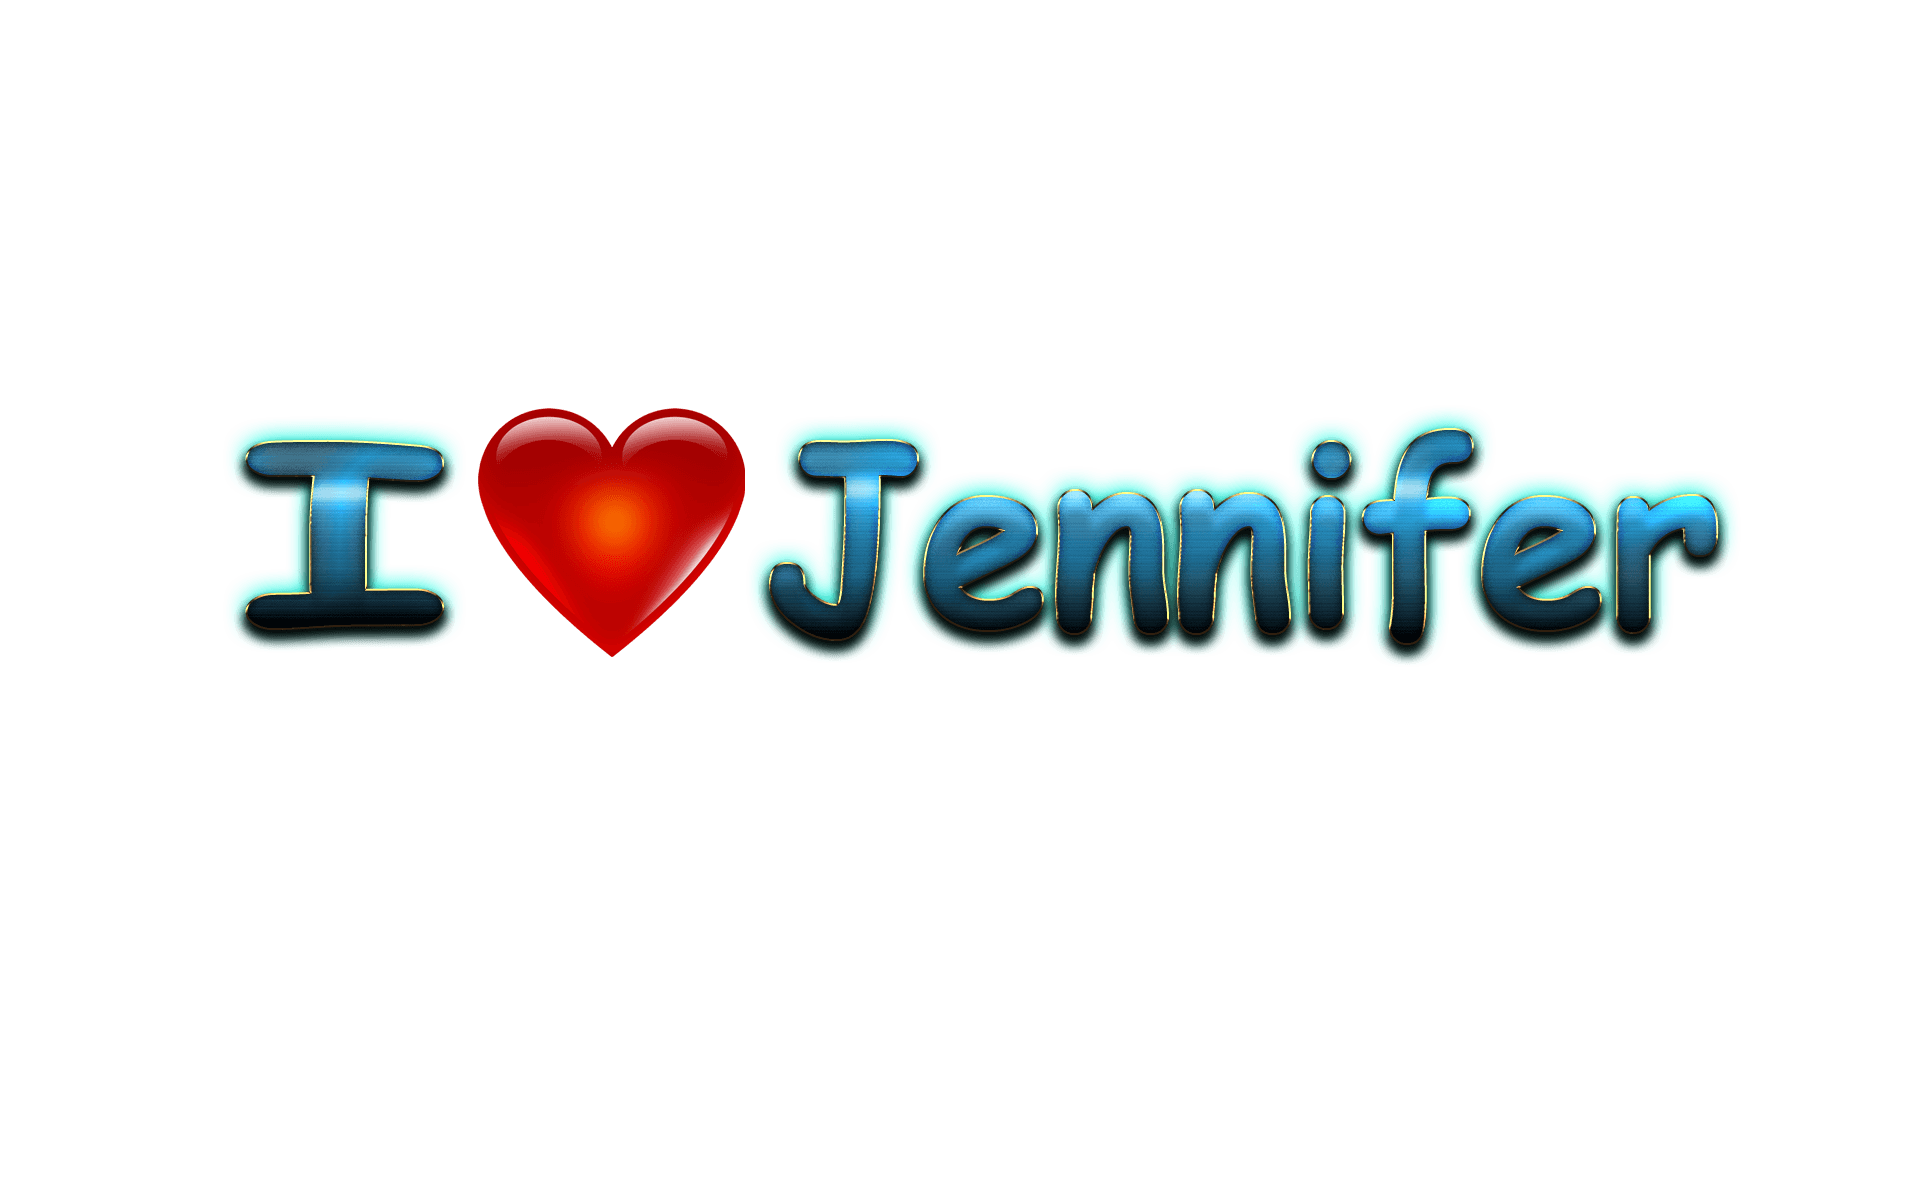 Jennifer Name Backgrounds